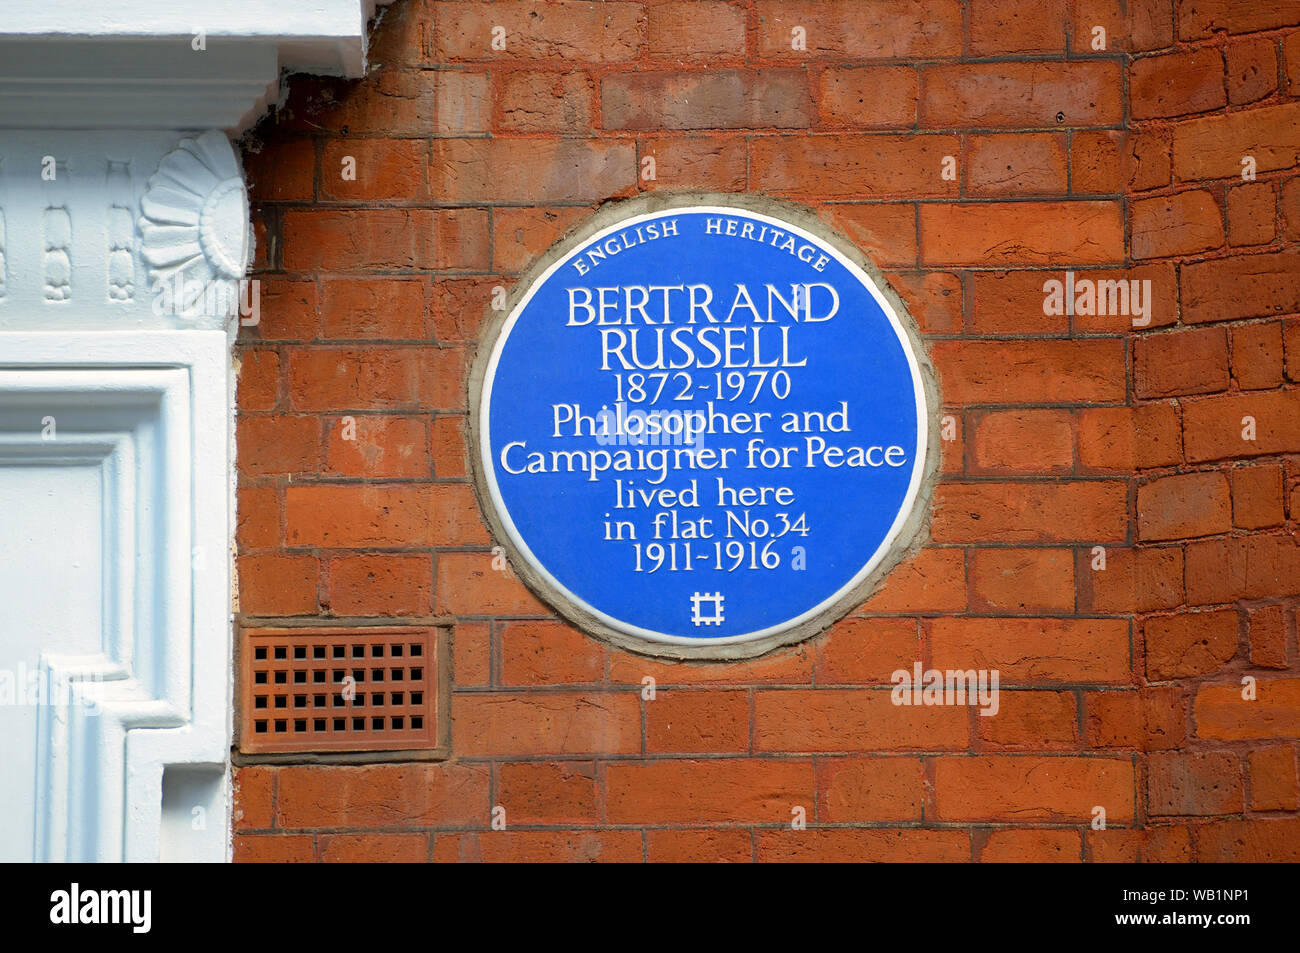 Londres, Angleterre, Royaume-Uni. Blue Plaque commémorative : BERTRAND RUSSELL 1872-1970 Philosophe et militant pour la paix a vécu ici dans télévision No34 1911-1916 (3 Banque D'Images